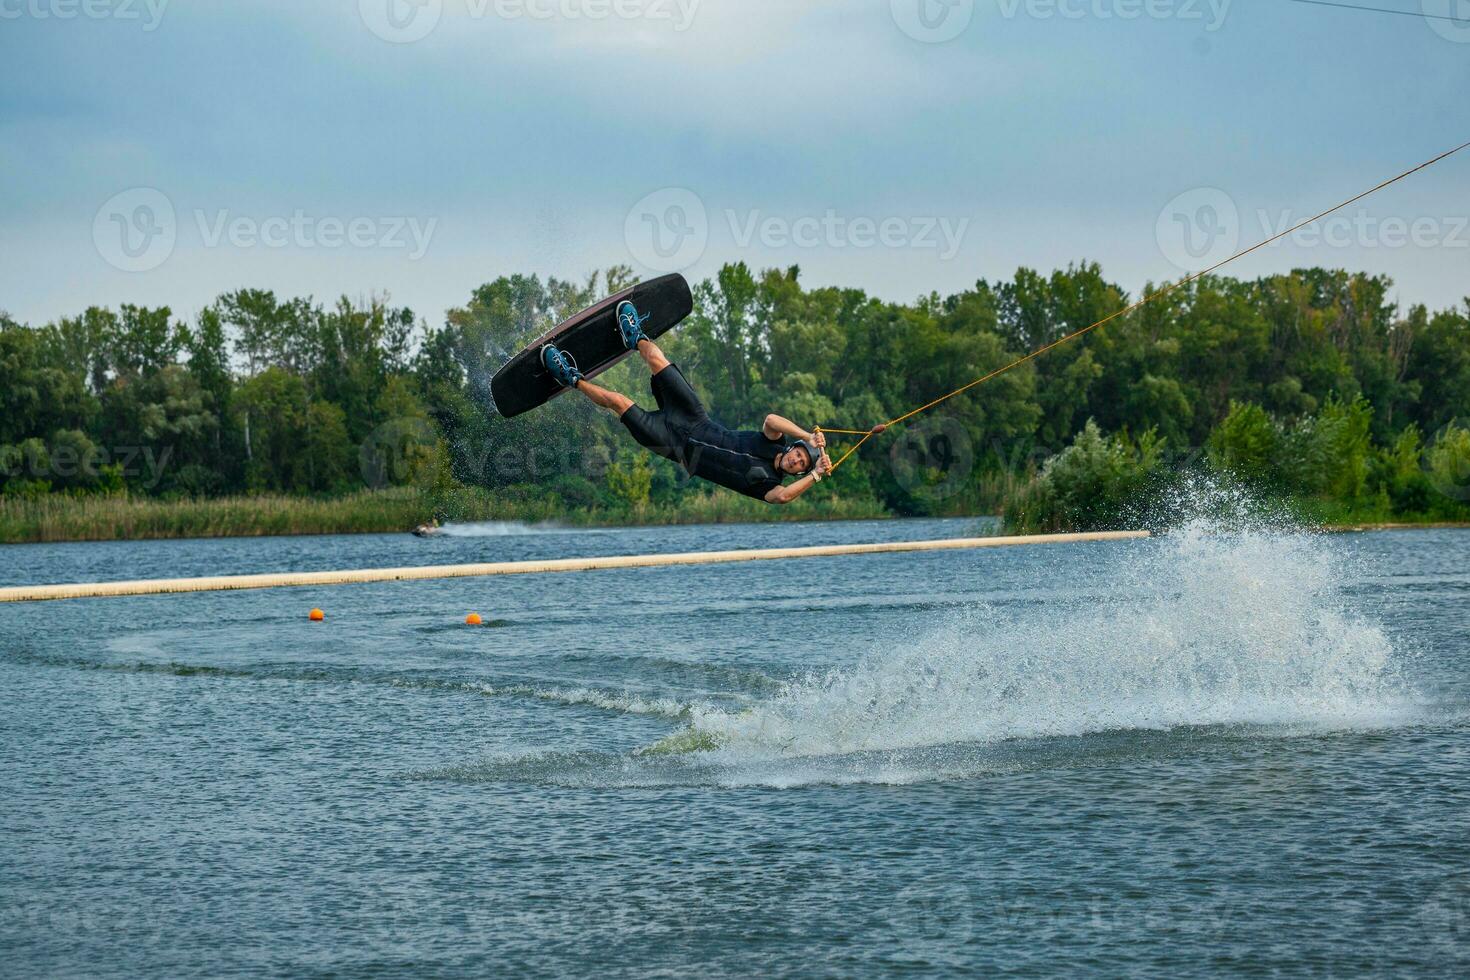 expérimenté wakeboard cavalier sauter et filage dans air en portant sur à remorquer câble photo